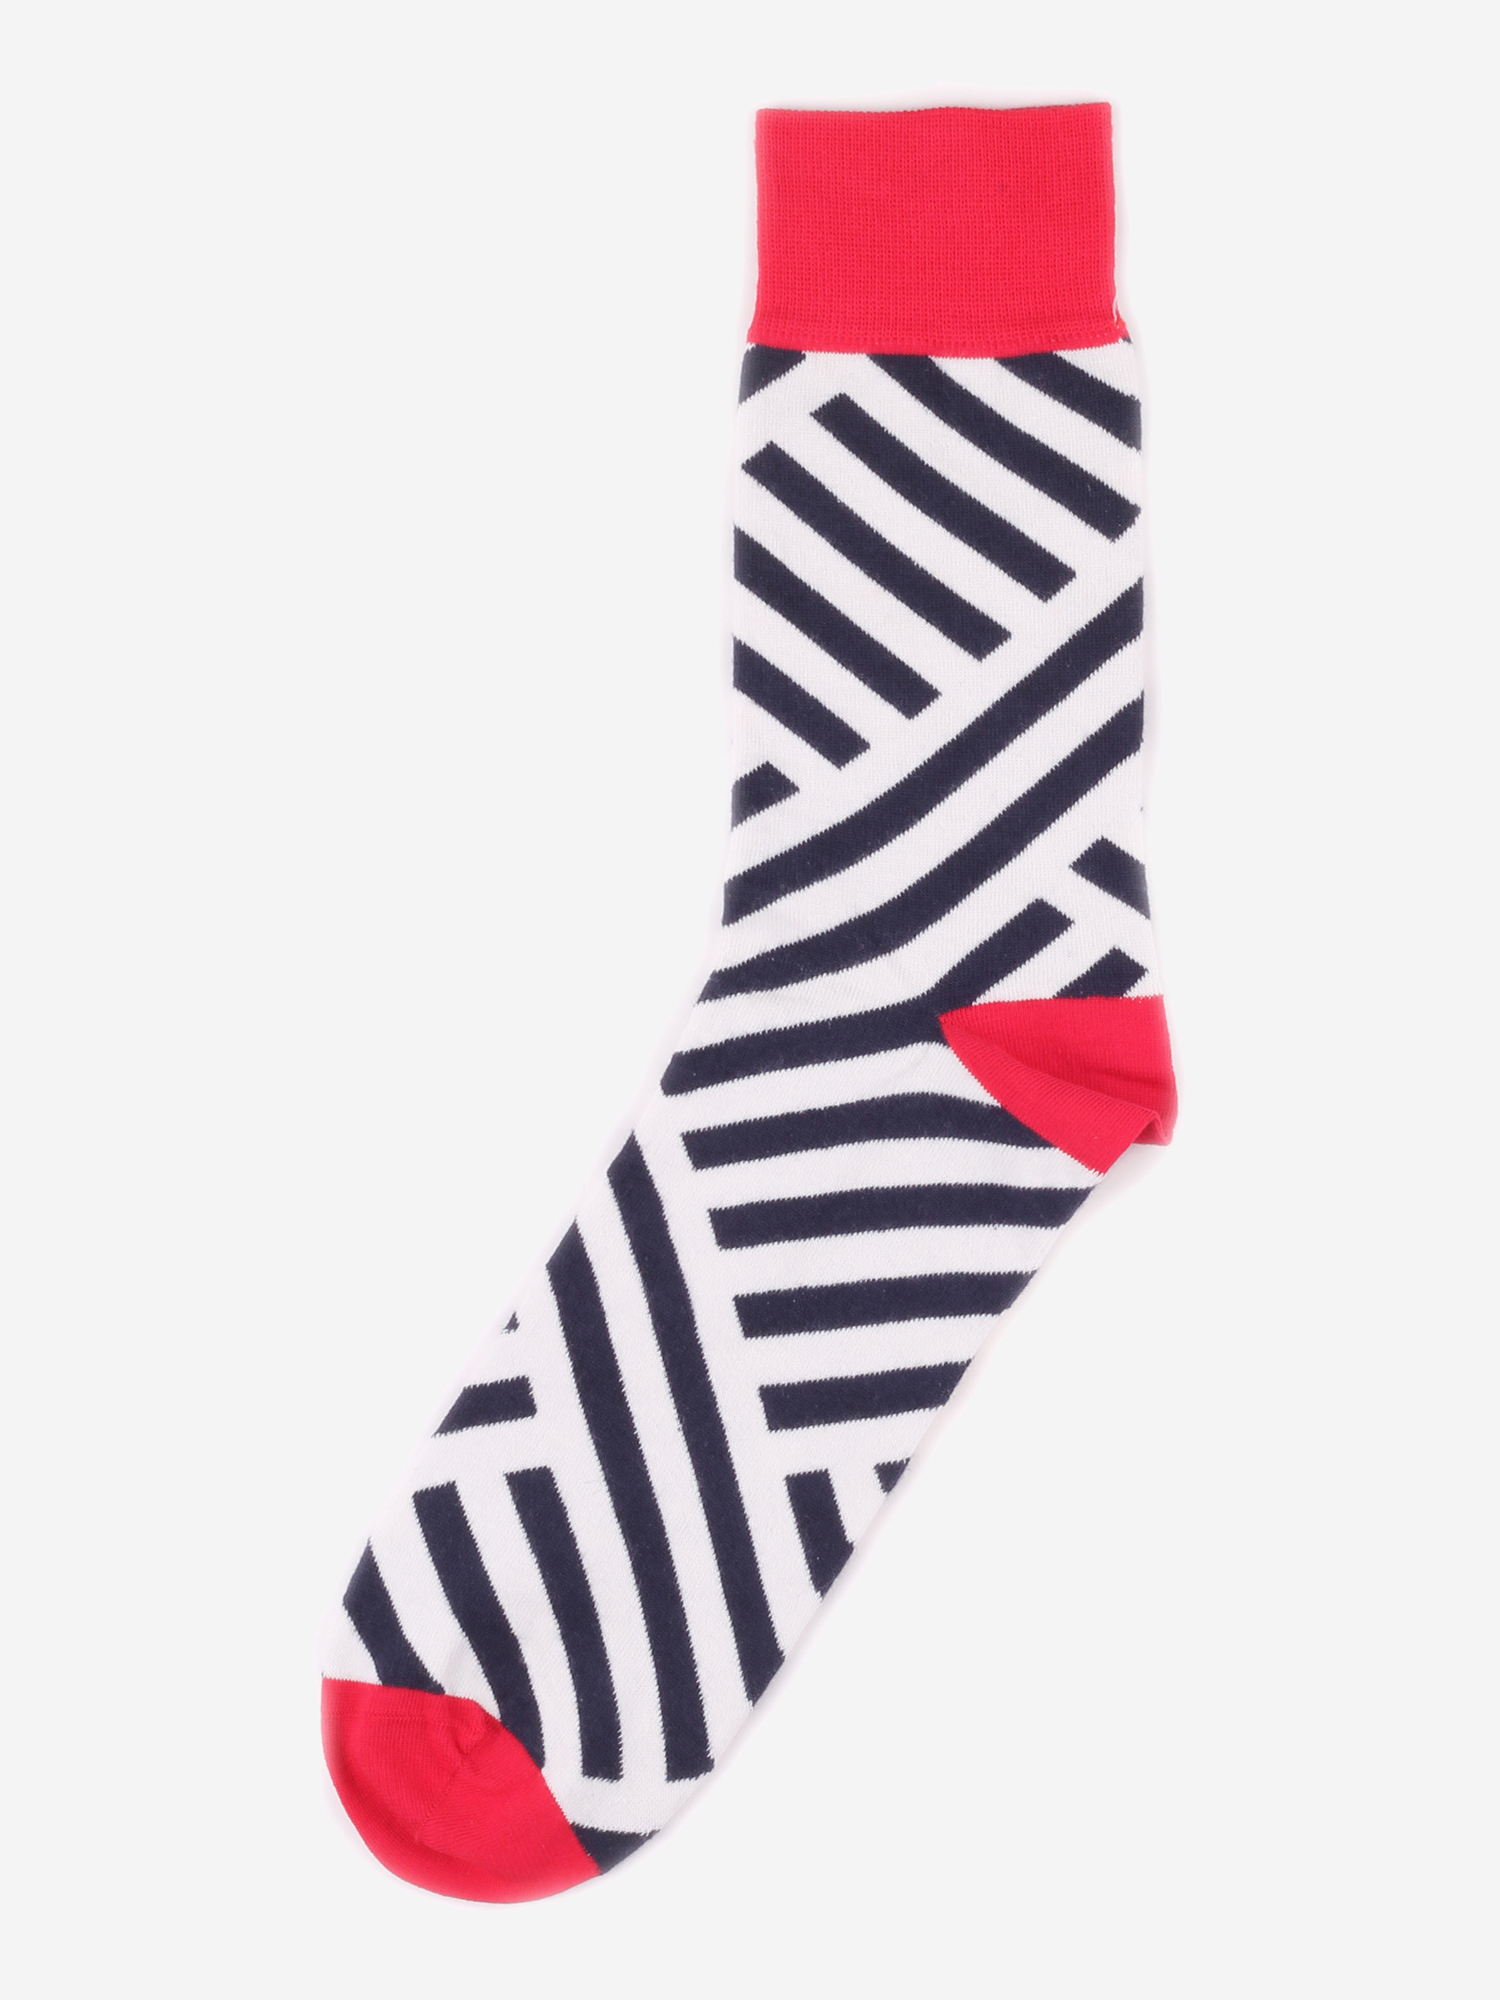 Дизайнерские носки Burning Heels - Diagonal Stripes - Red/Black, Красный дизайнерские носки burning heels diagonal stripes yellow blue желтый